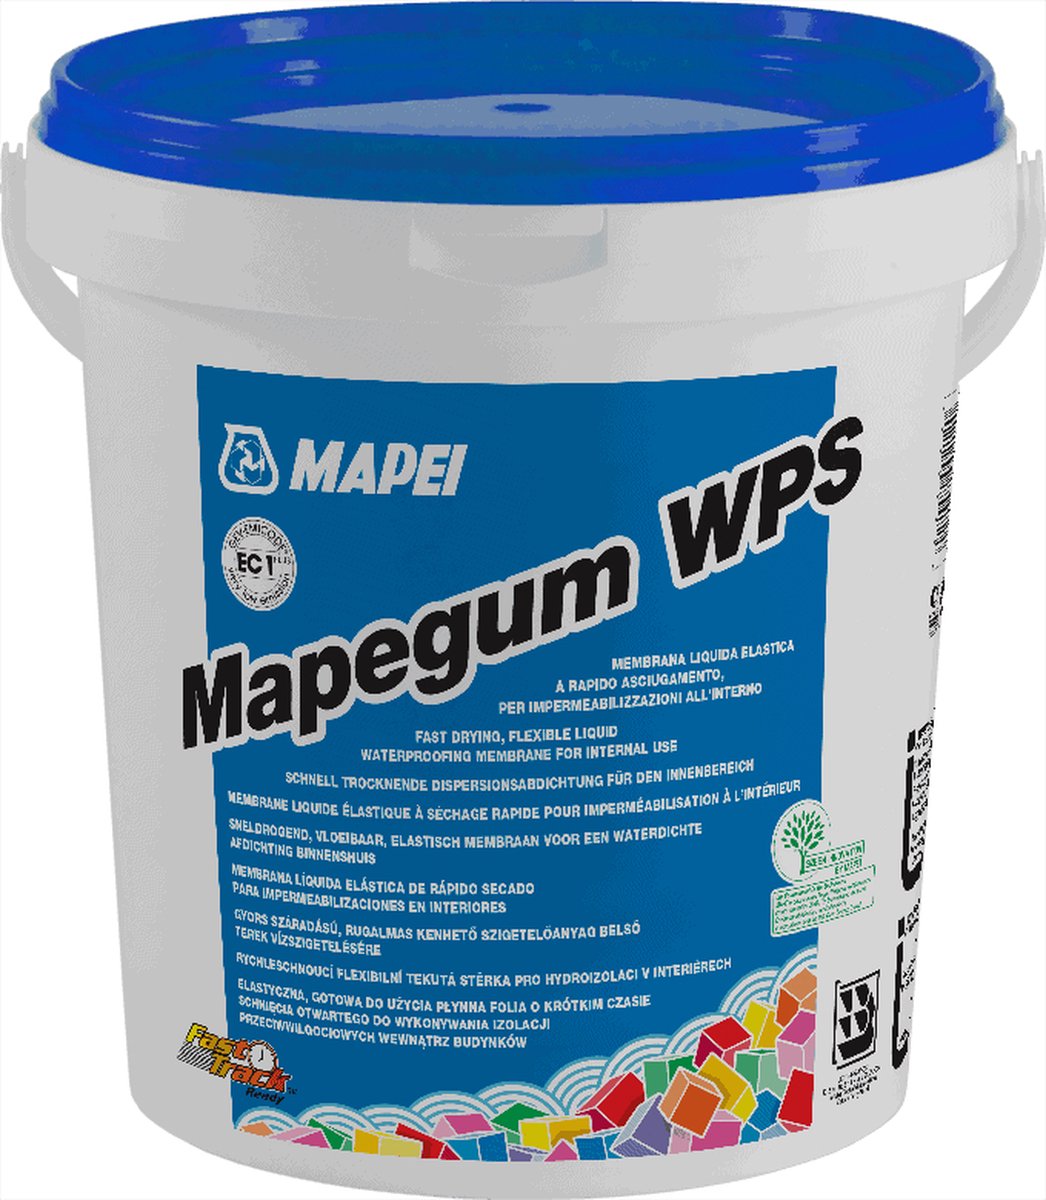 Mapei Mapegum WPS Waterdichtingsmembraan - Waterdichte Coating Voor Vochtige Ruimtes - 10 kg - Mapei